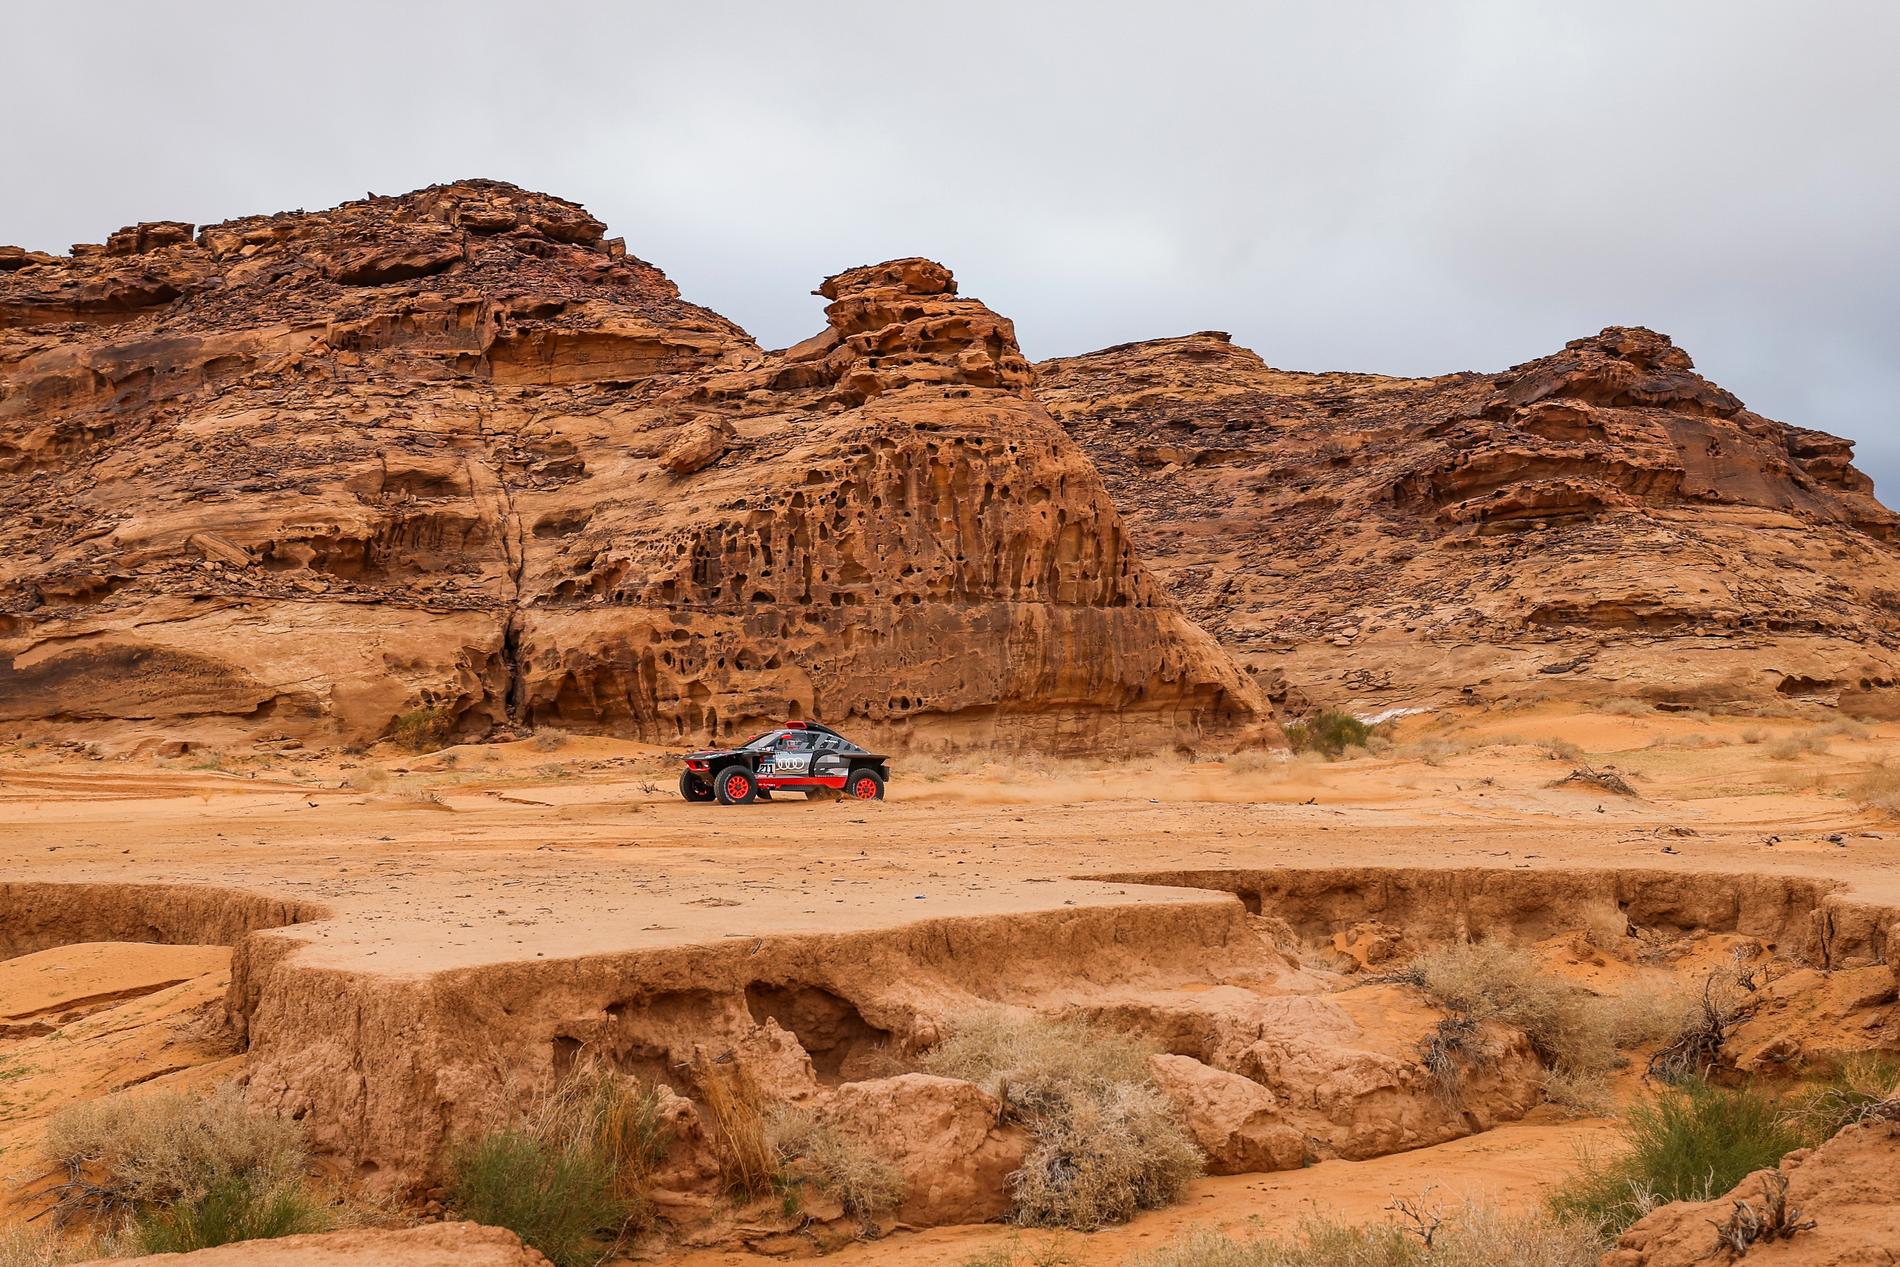 Rally Dakar anses vara en av världens farligaste sportevenemang